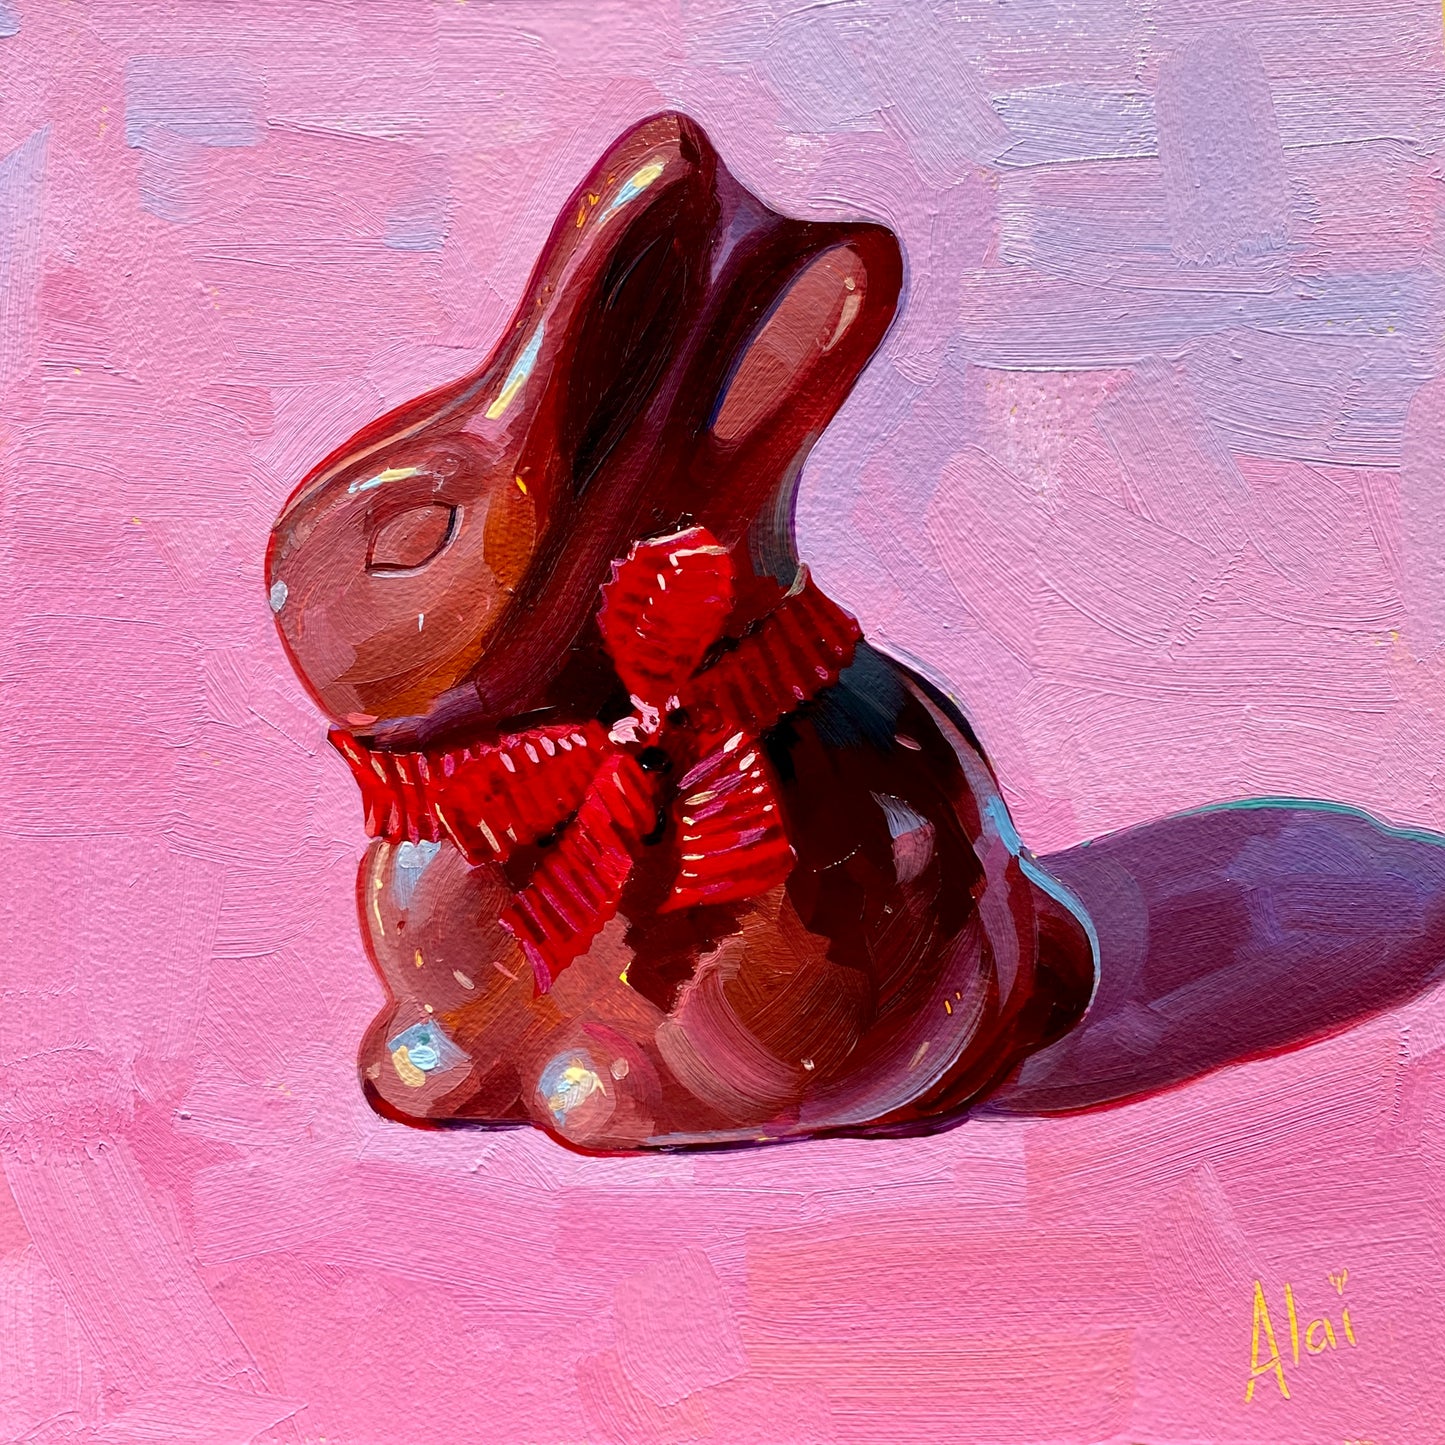 Chocolate bunny - Original Oil Painting